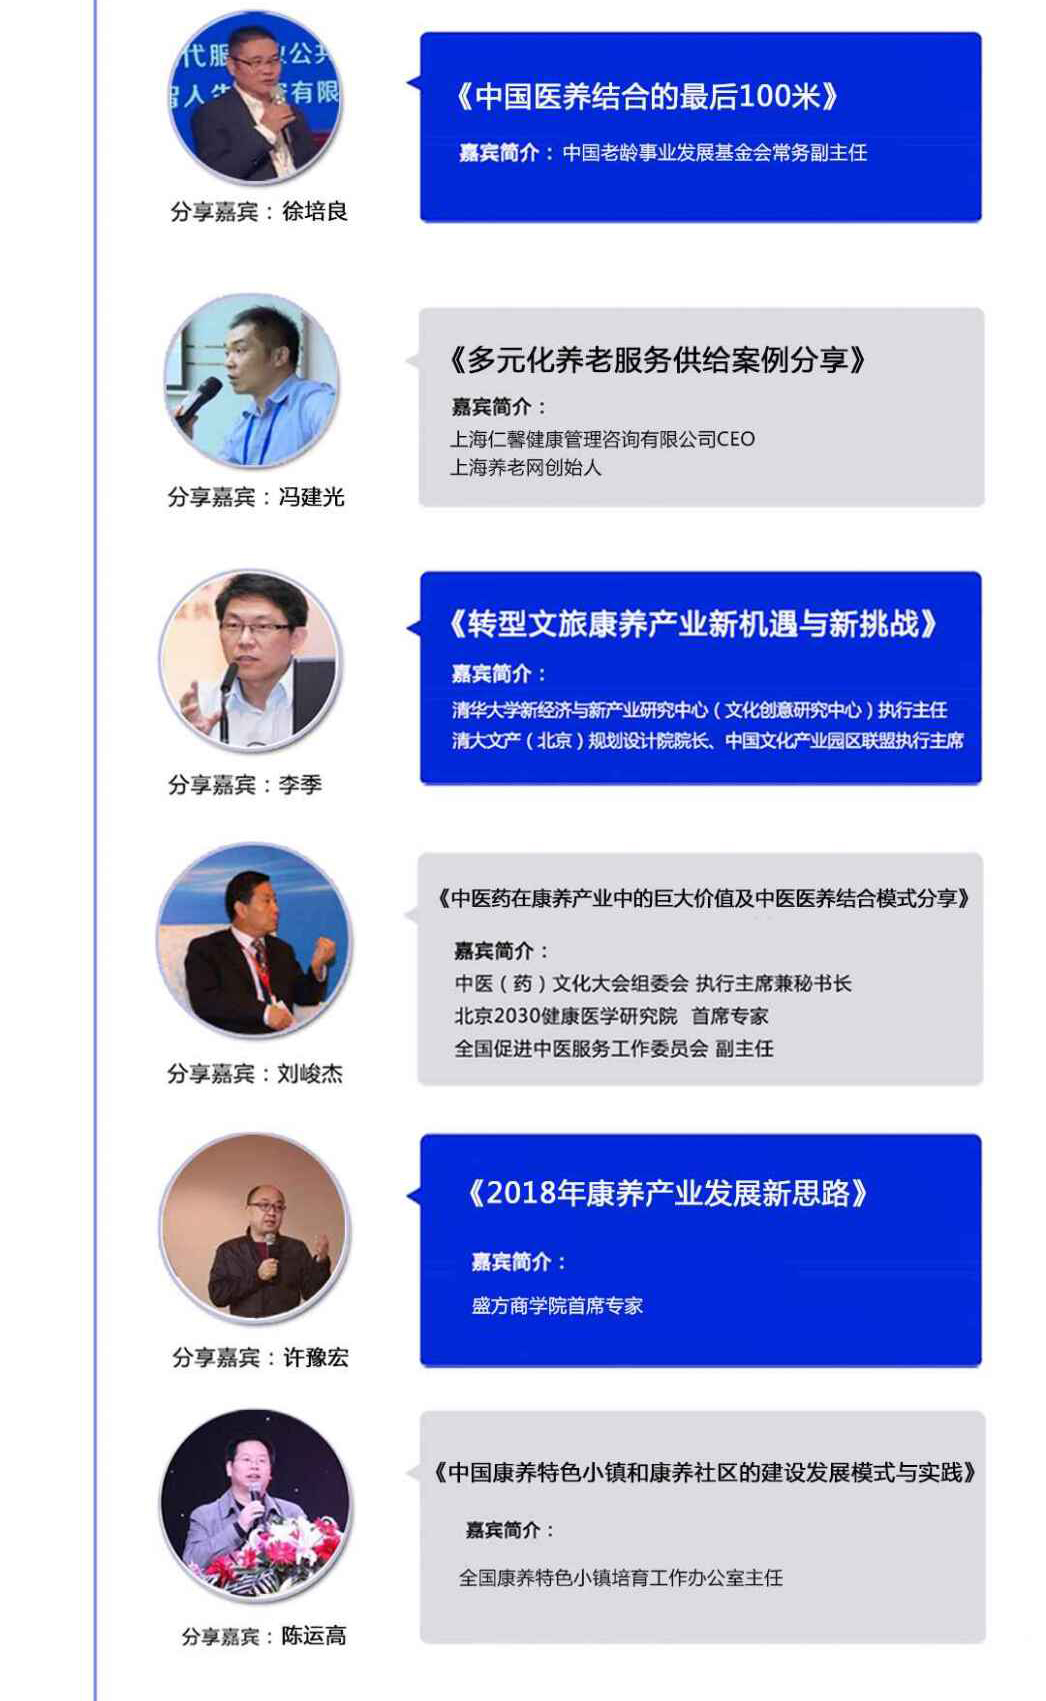 2018首届中国康养产业总裁峰会暨康养全产业链资源对接大会